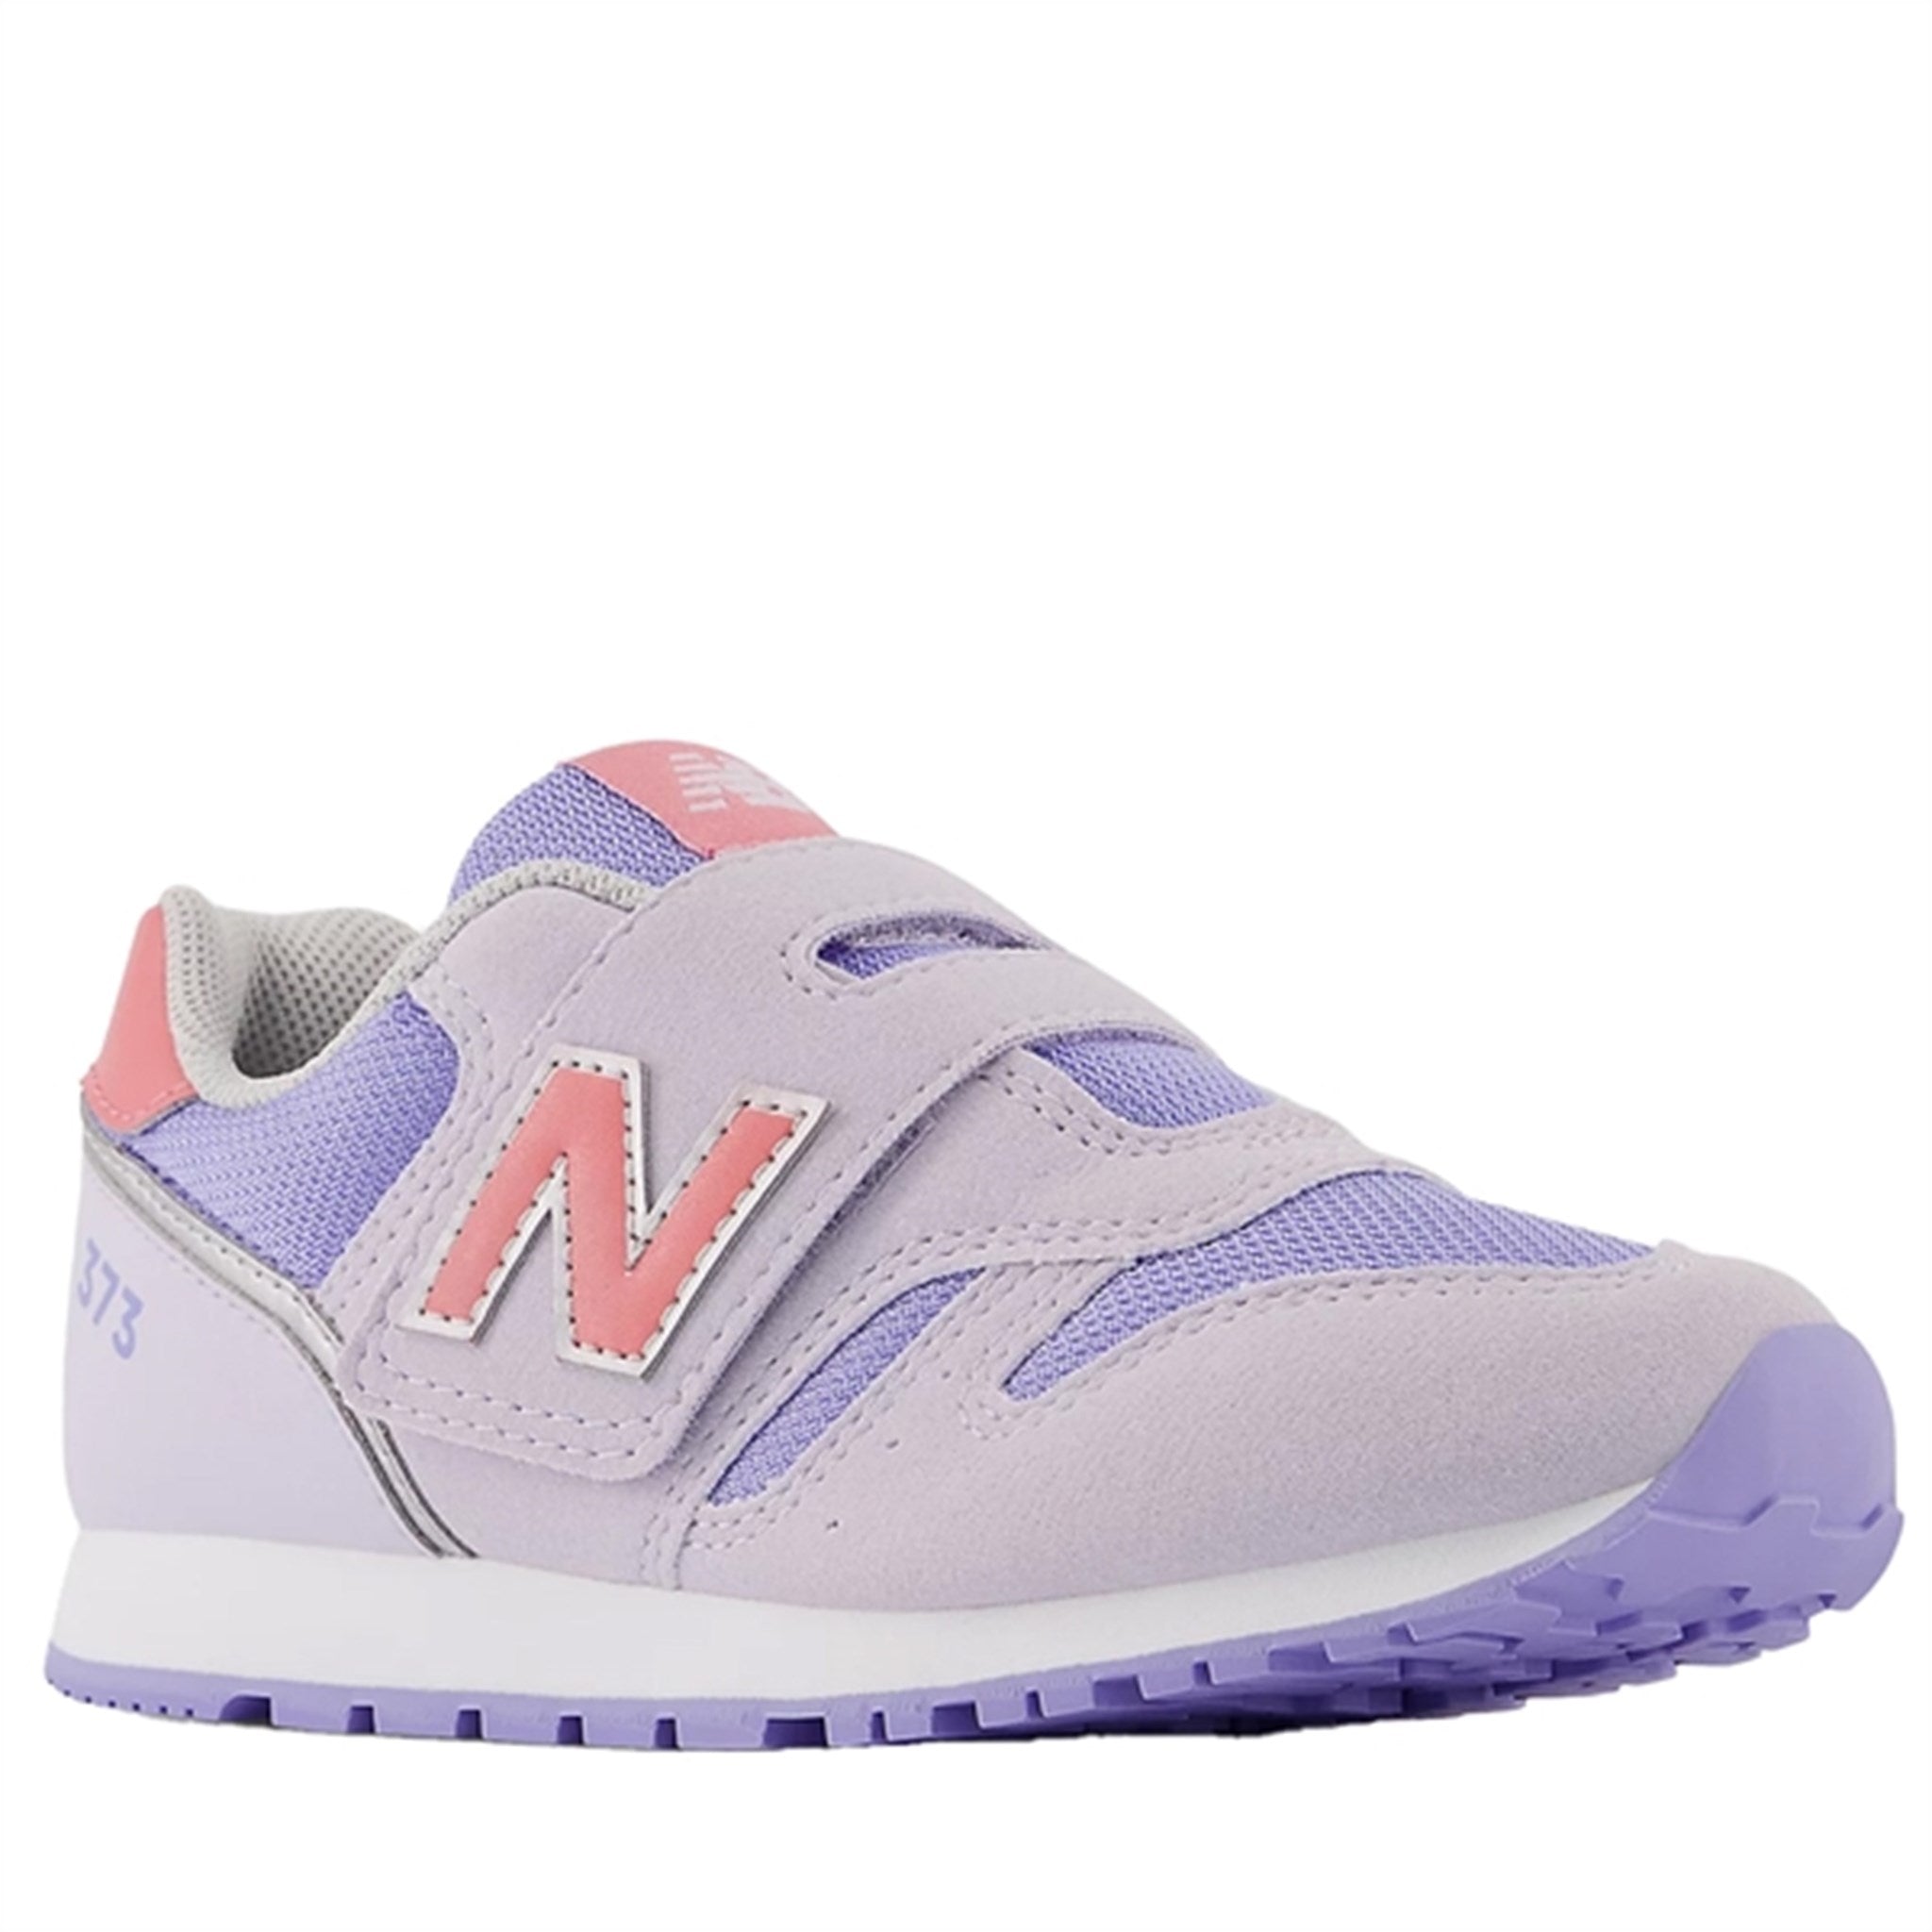 New Balance 373 Grey Lilac/Natural Pink 2